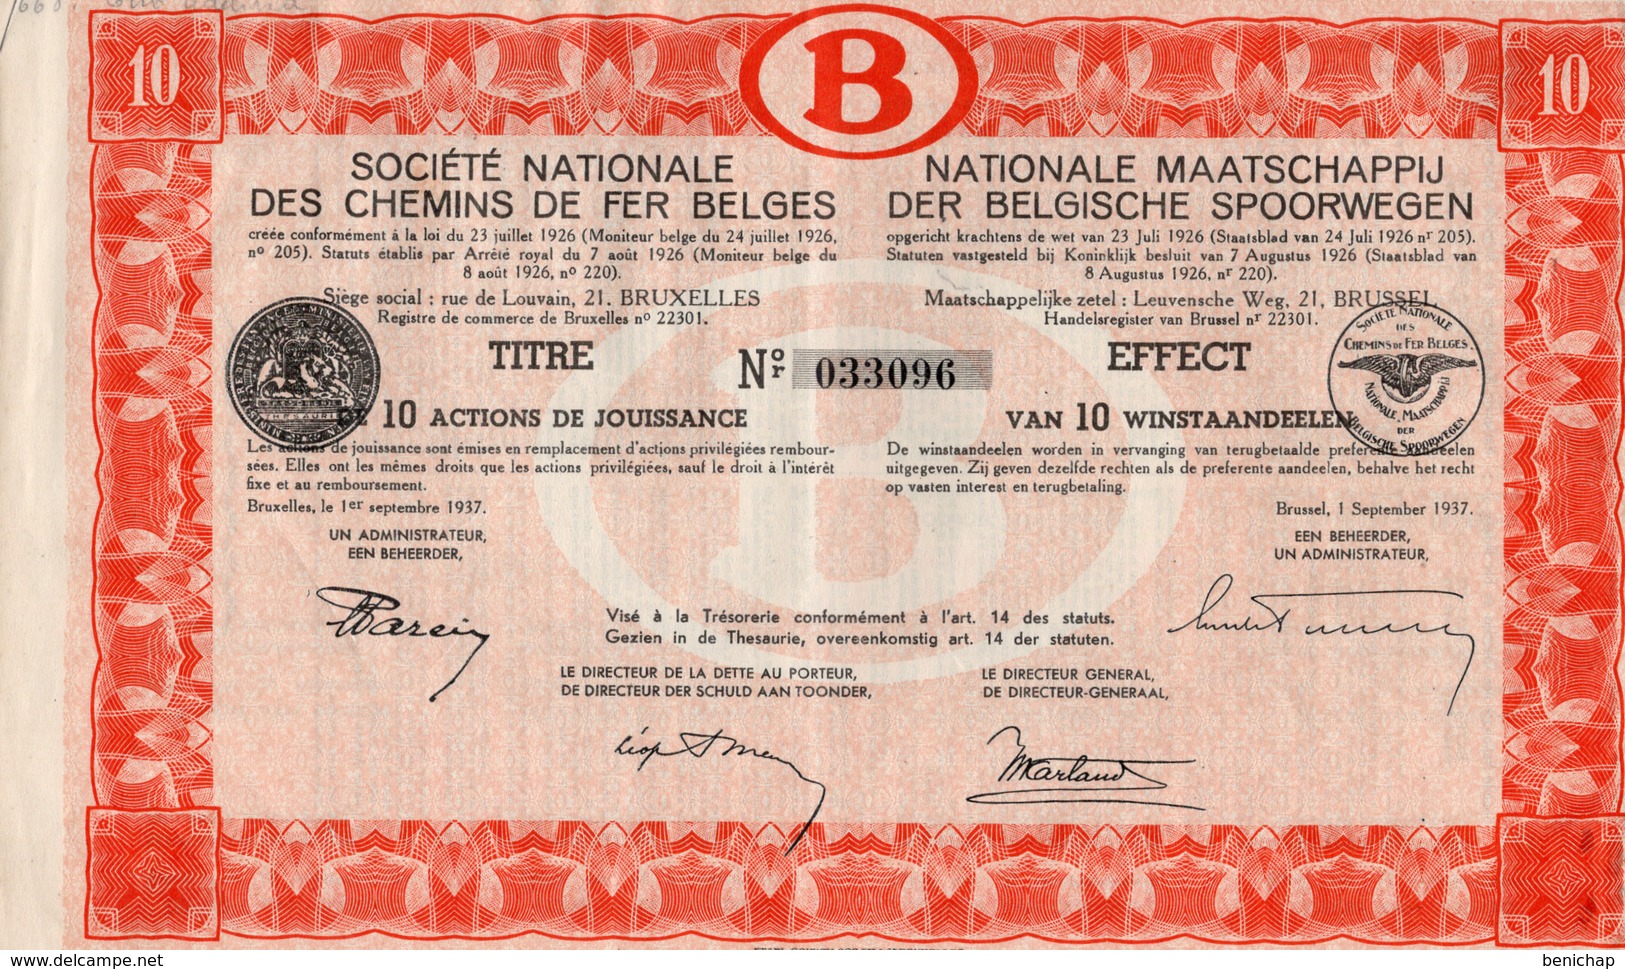 Titre De Bourse NMBS - SNCB - De 10 Actions De Jouissance - Van 10 Winstaandeelen - 1937. - Spoorwegen En Trams